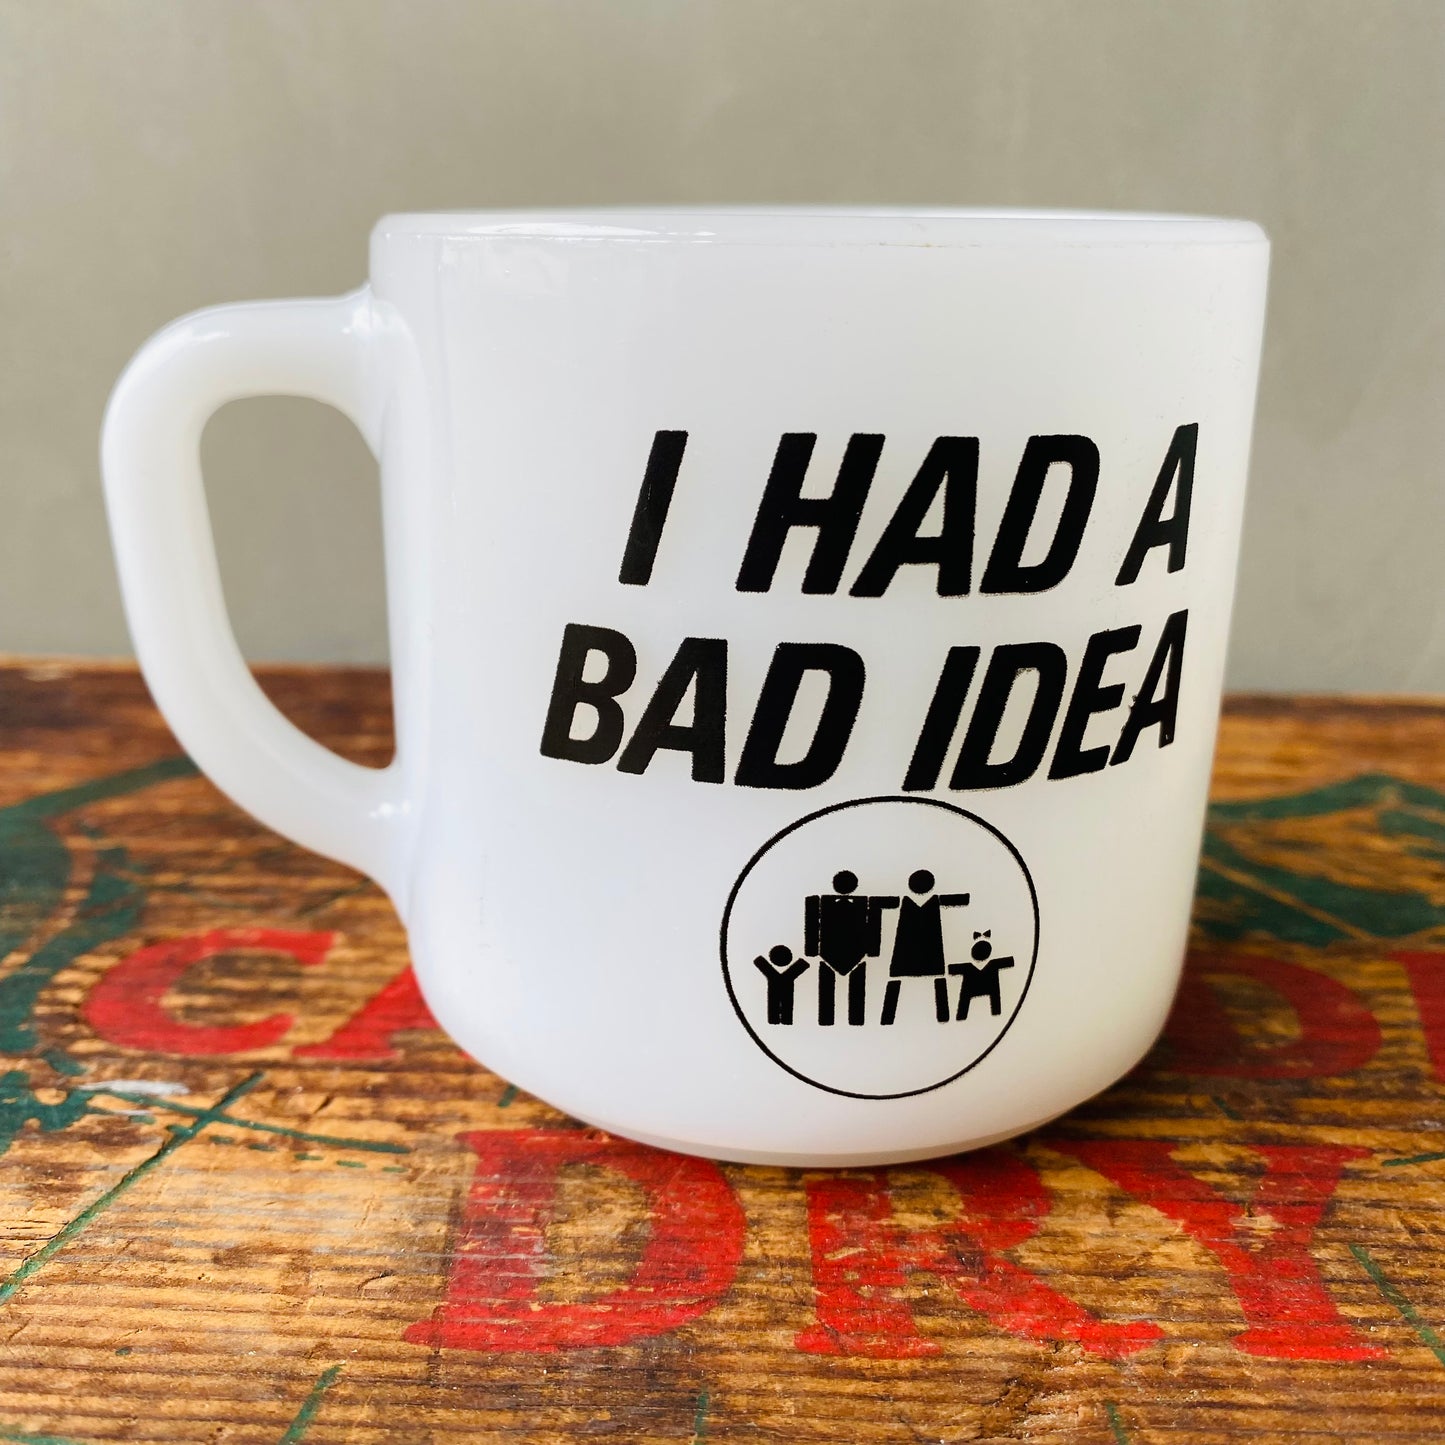 【USA vintage】Federal mug ZODYS BAD GUY